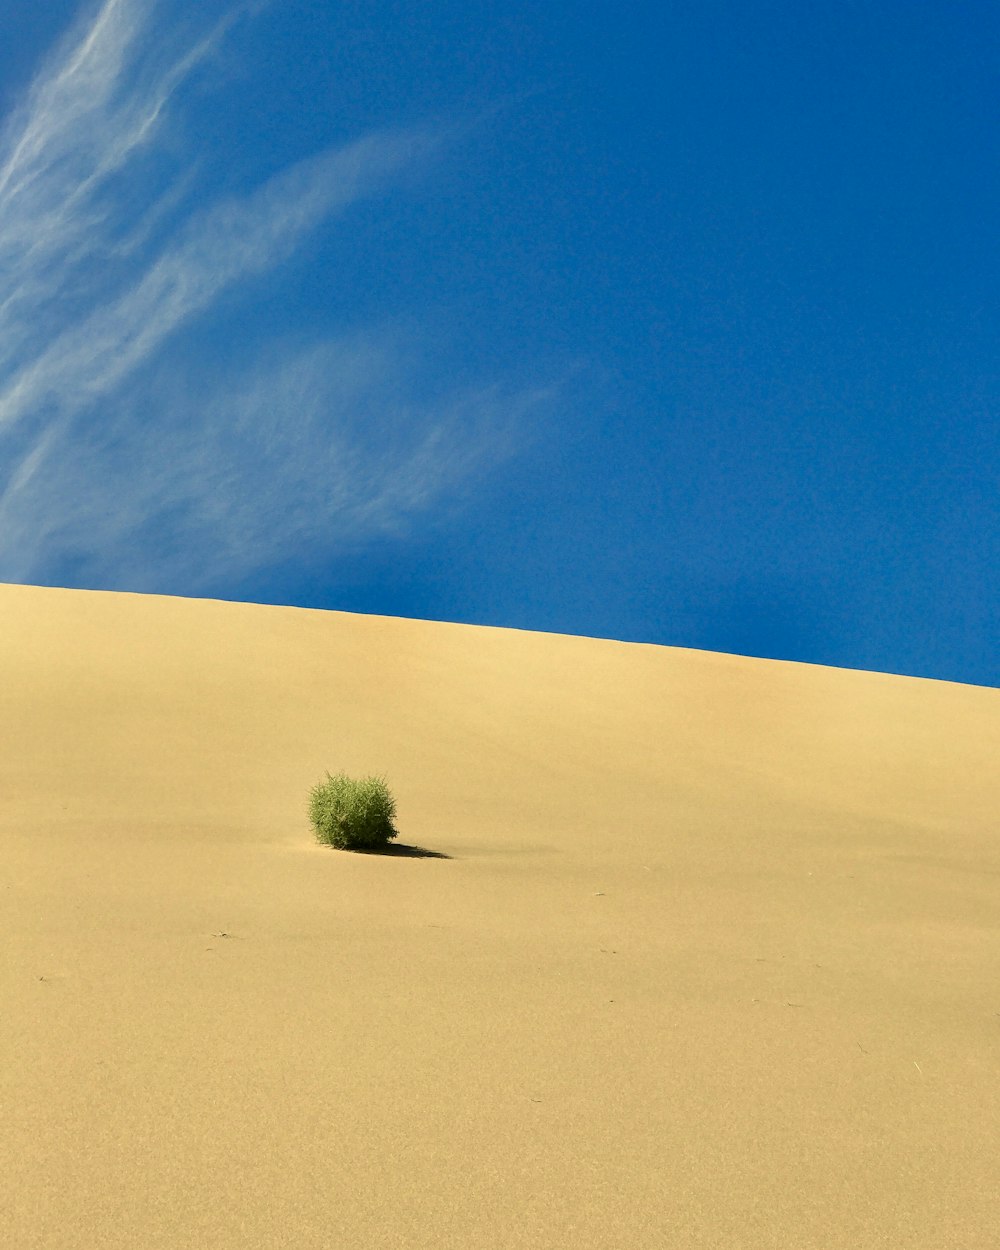 green leafed plant on desert at daytime